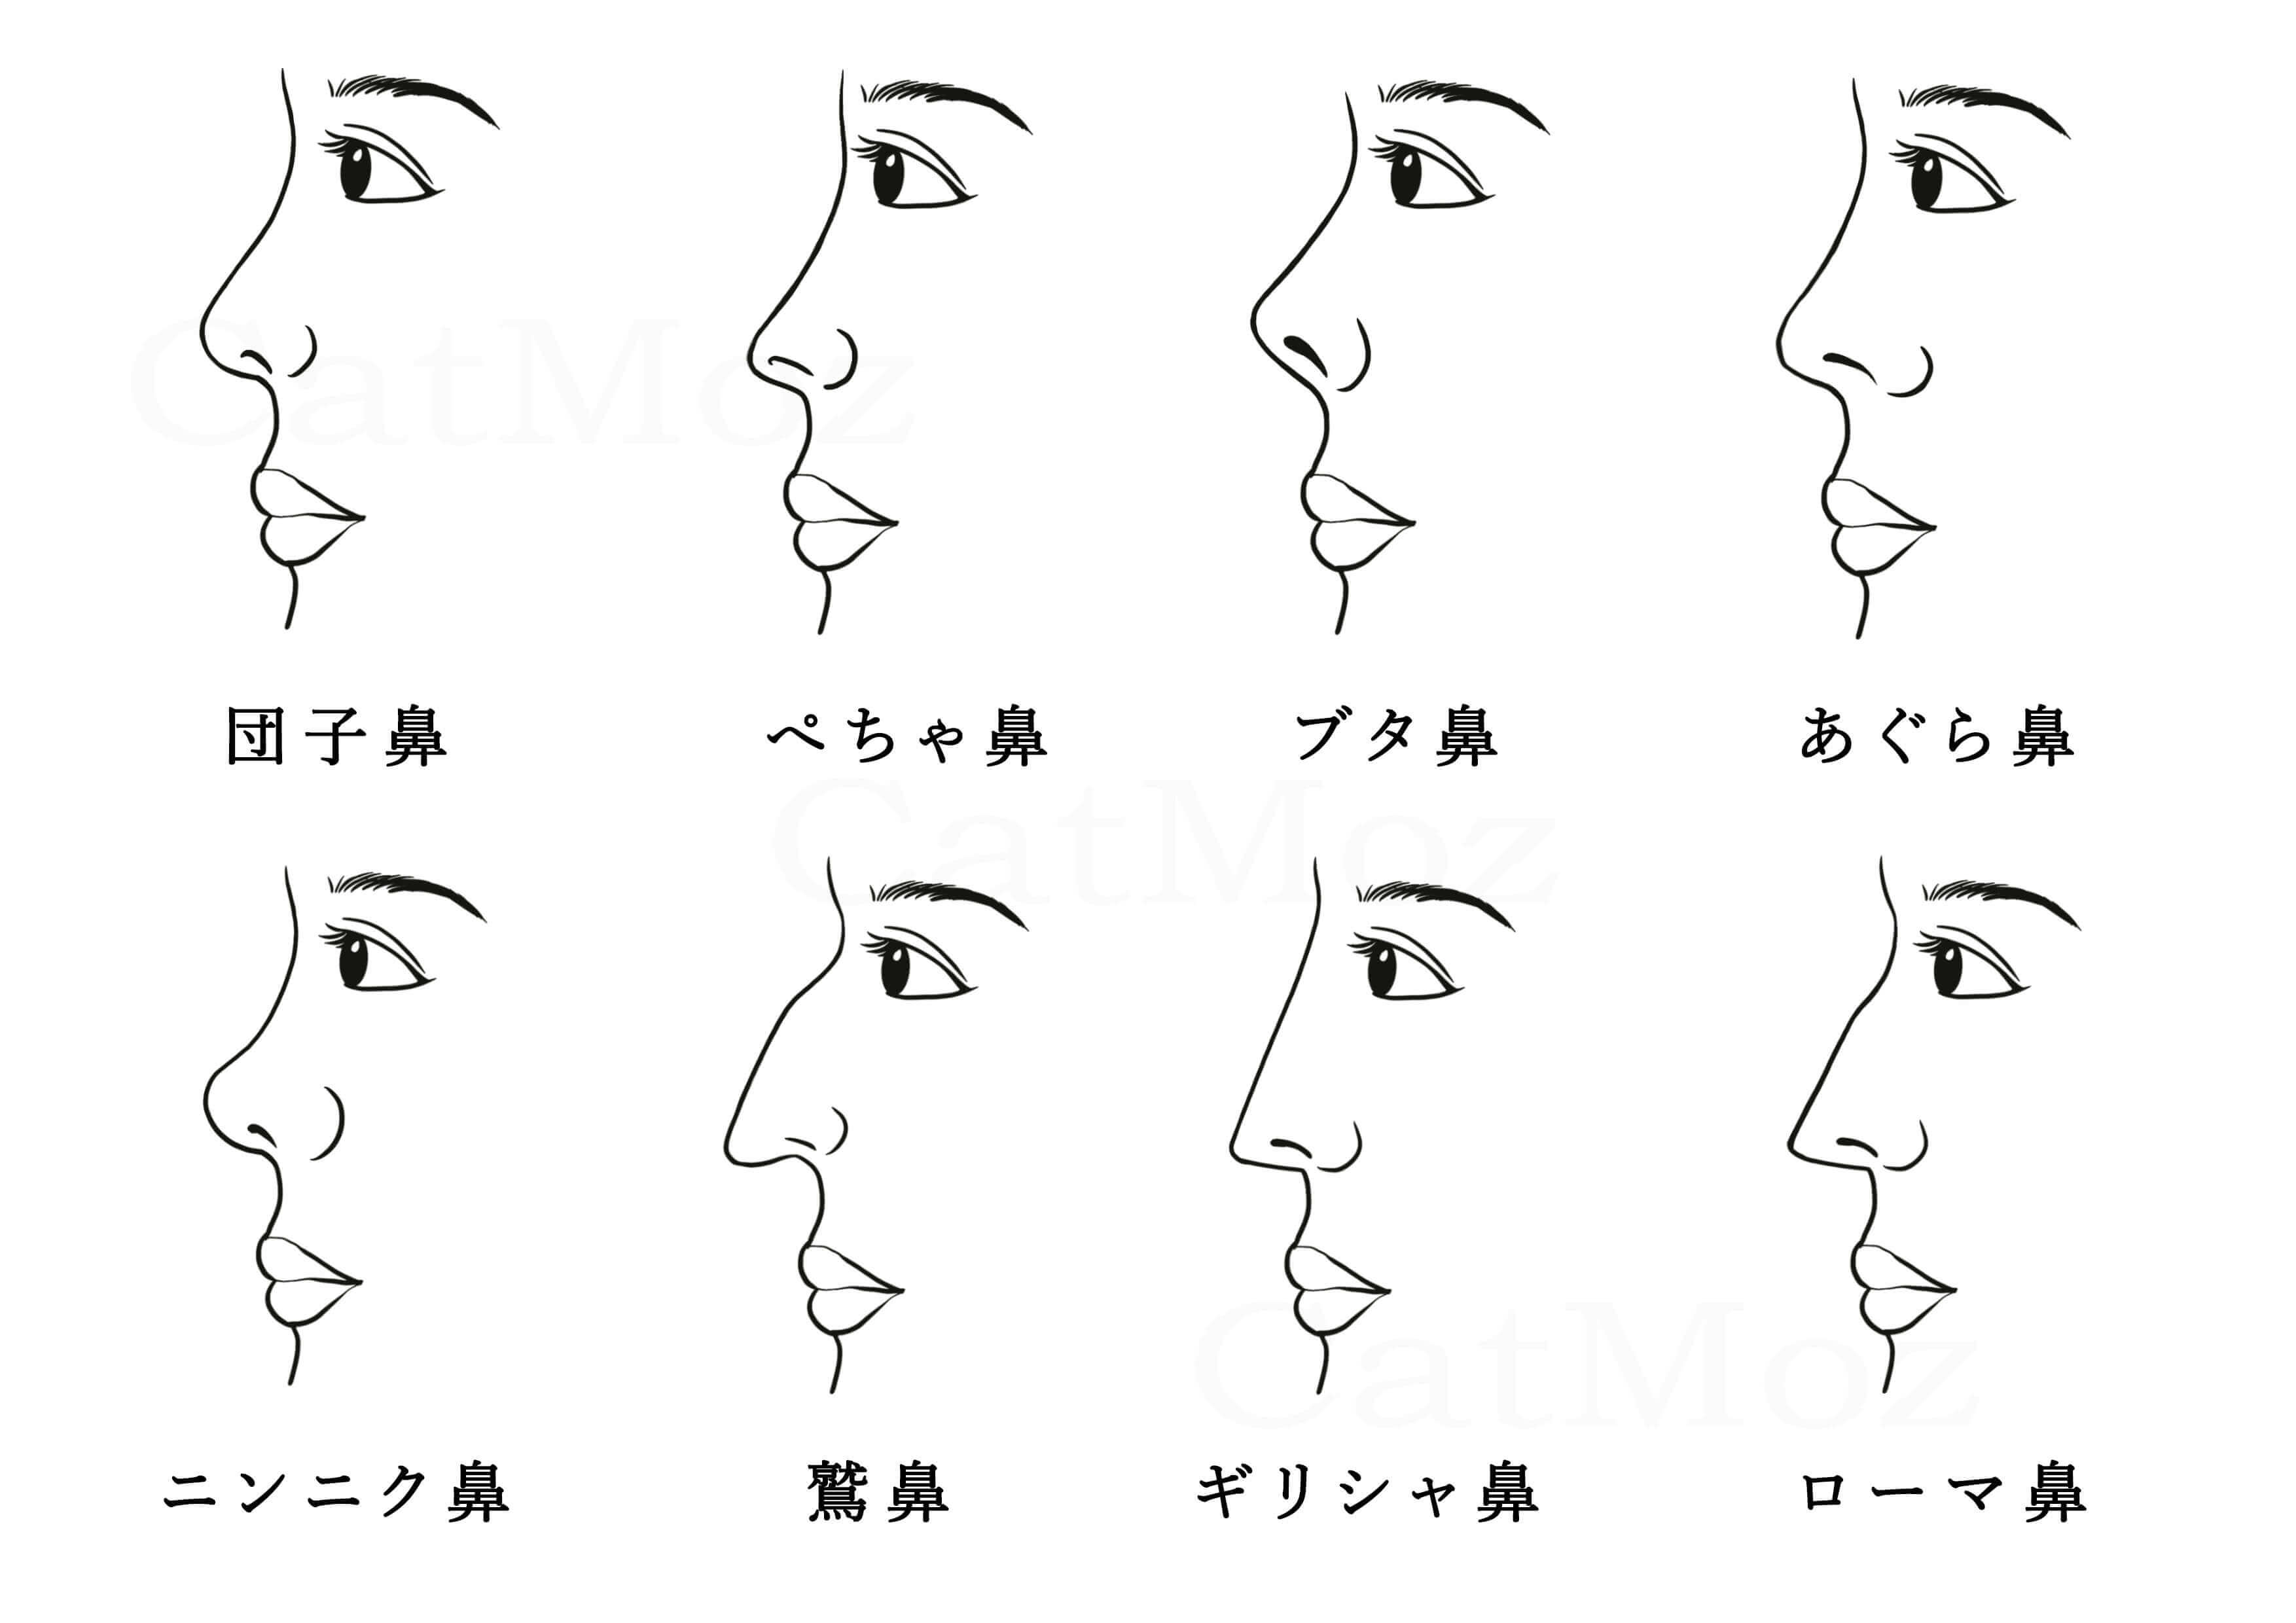 鼻の形の種類・名前を写真付きでわかりやすく解説。以下に挙げるいろいろな鼻の種類から、自分の鼻の型を探ってみよう！